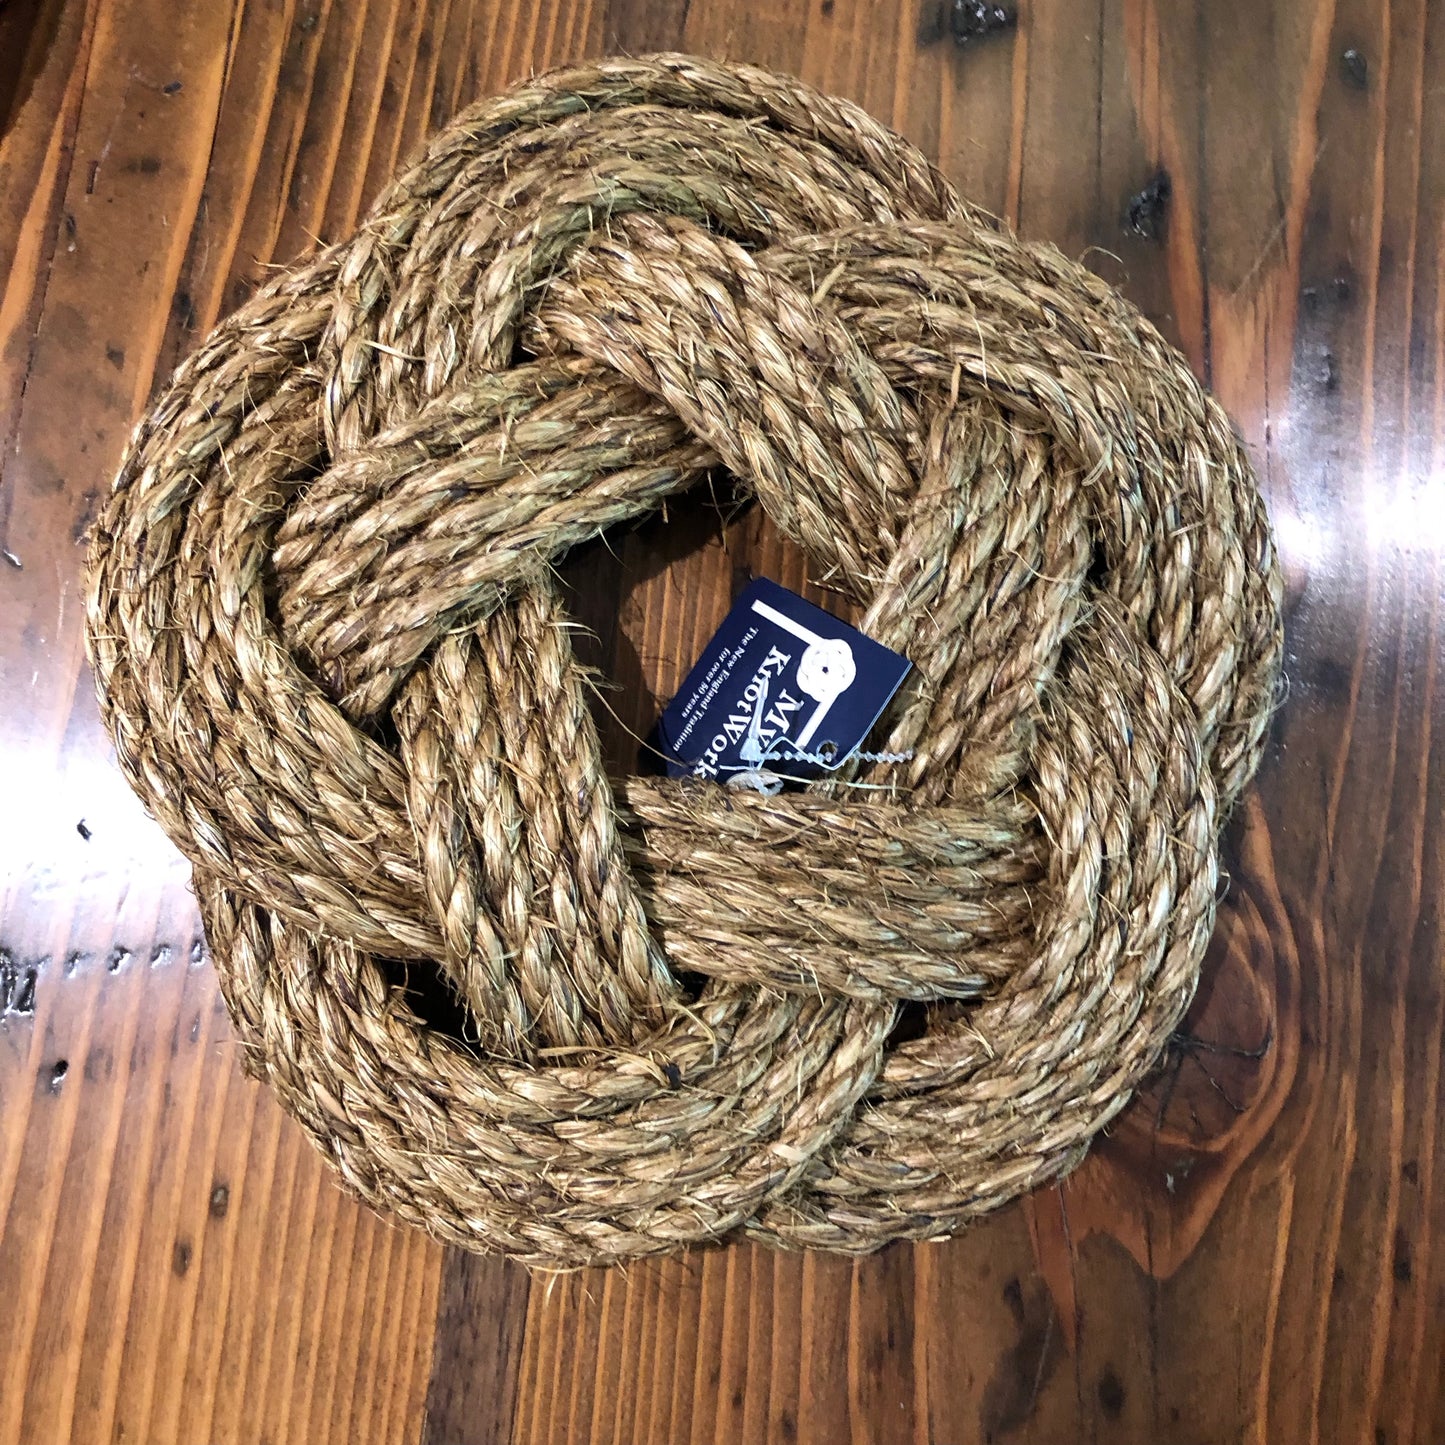 Nautical Sailor Knot Trivet